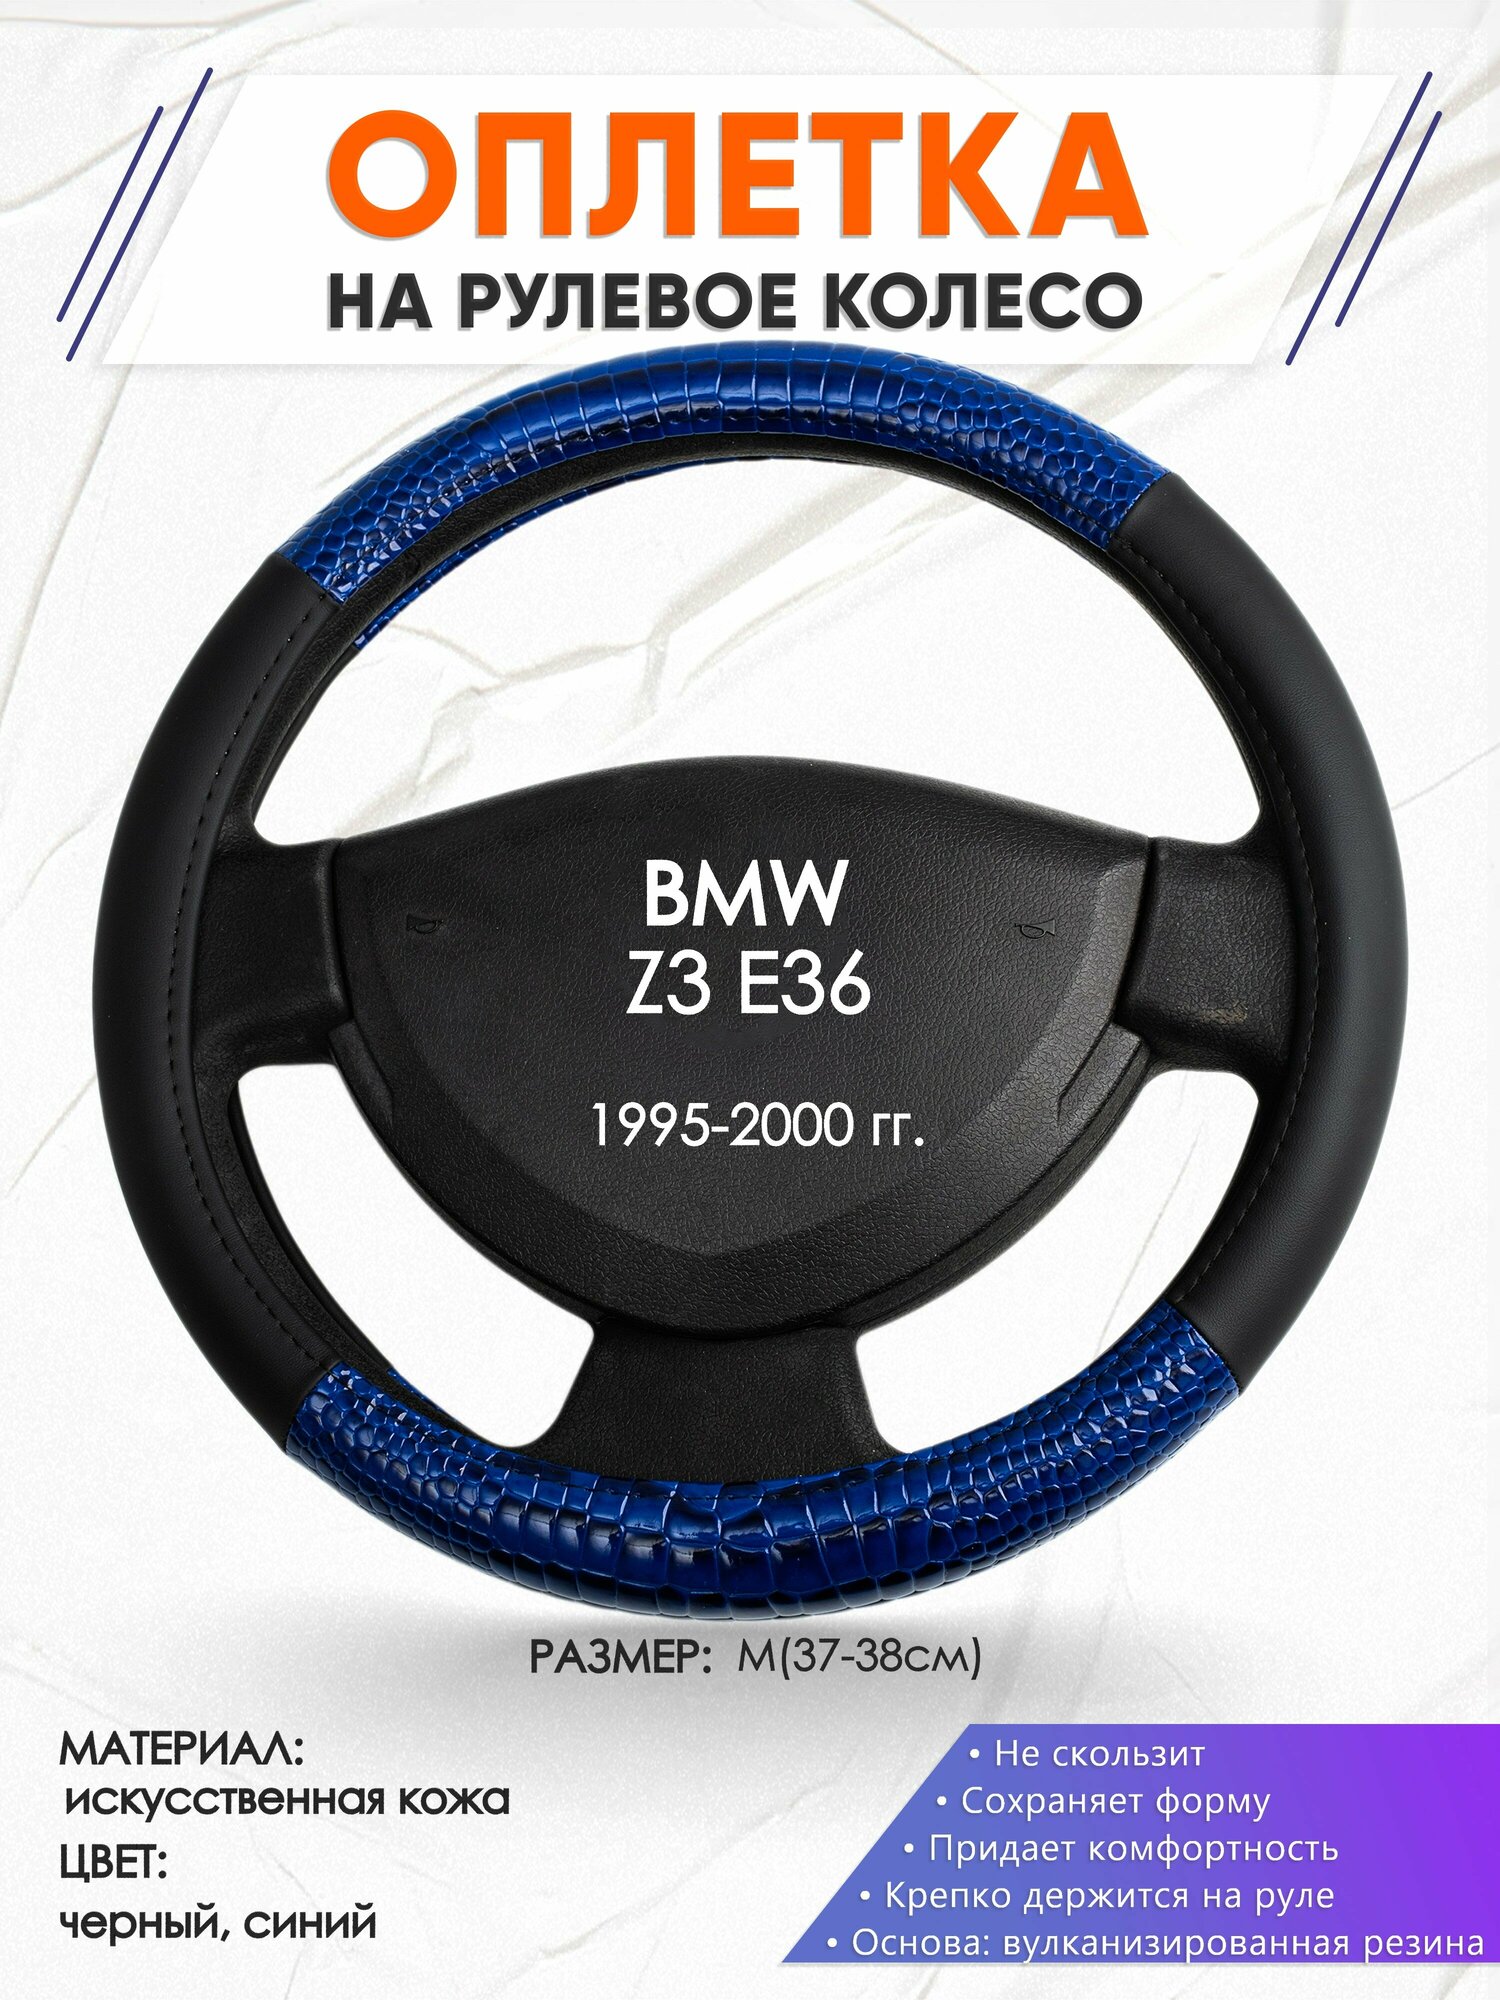 Оплетка наруль для BMW Z3 E36(Бмв зет 3 Е36) 1995-2000 годов выпуска, размер M(37-38см), Искусственная кожа 82